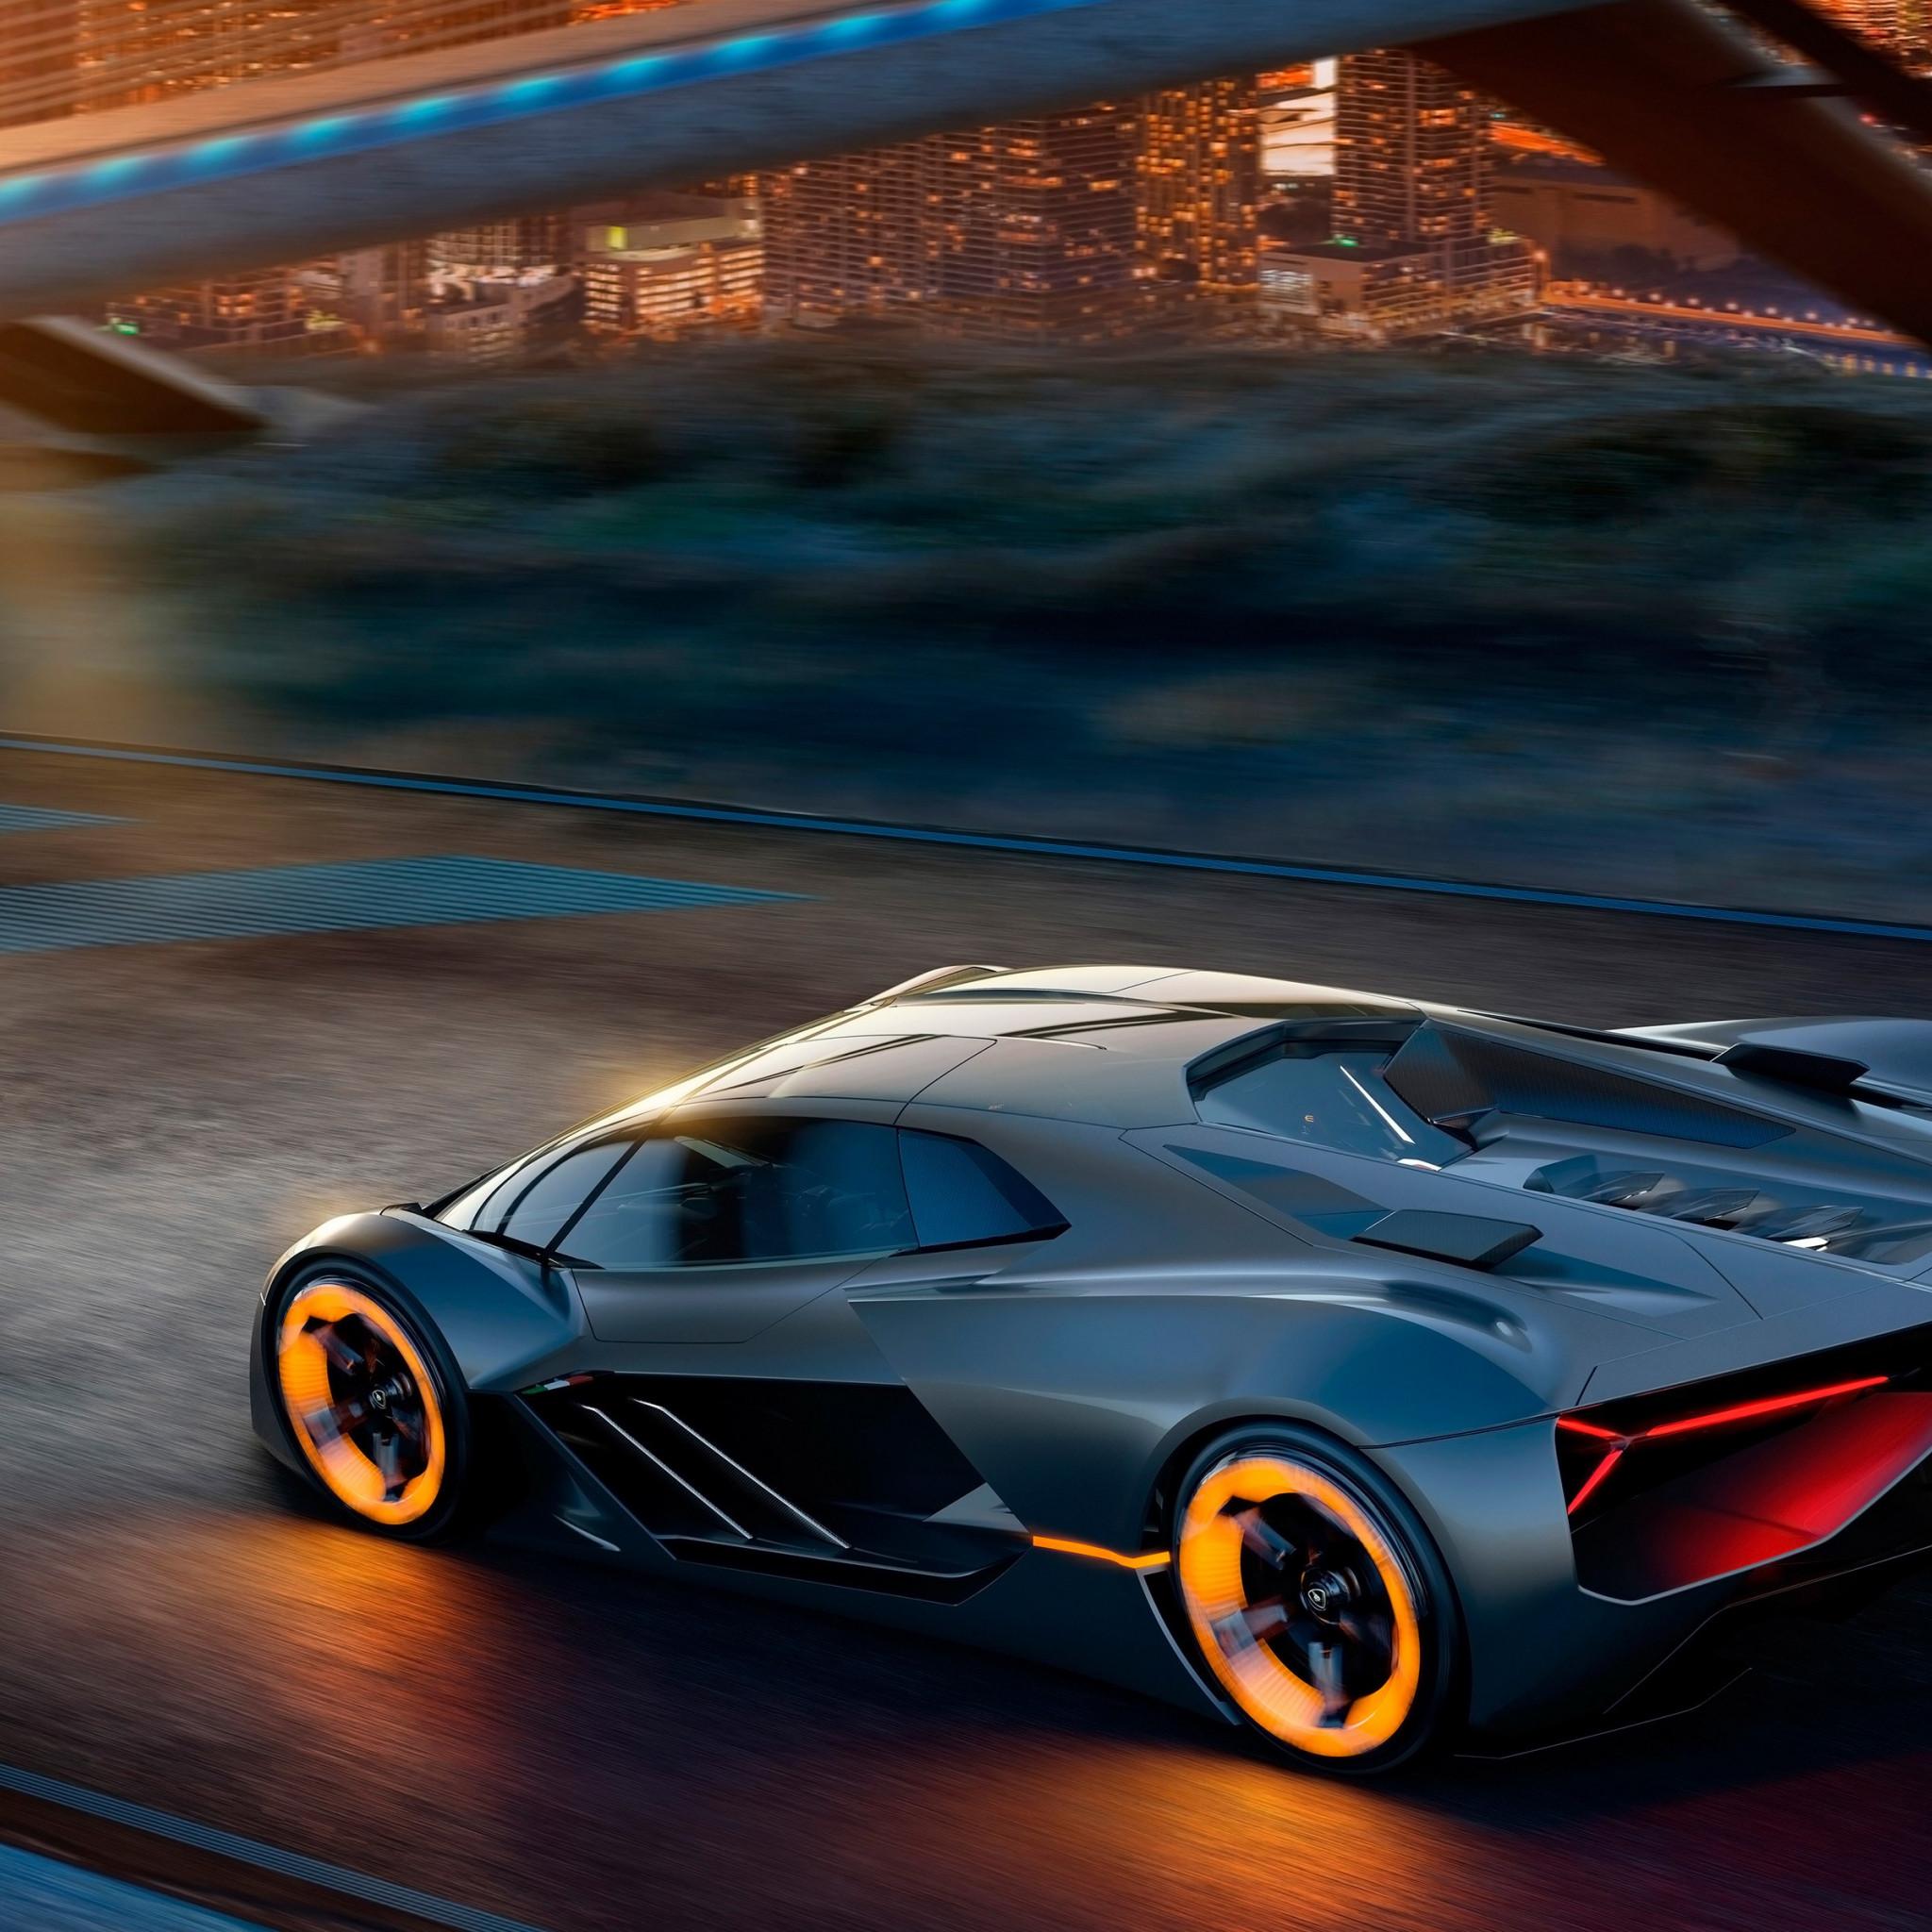 Download wallpaper: Lamborghini Terzo Millennio electric car